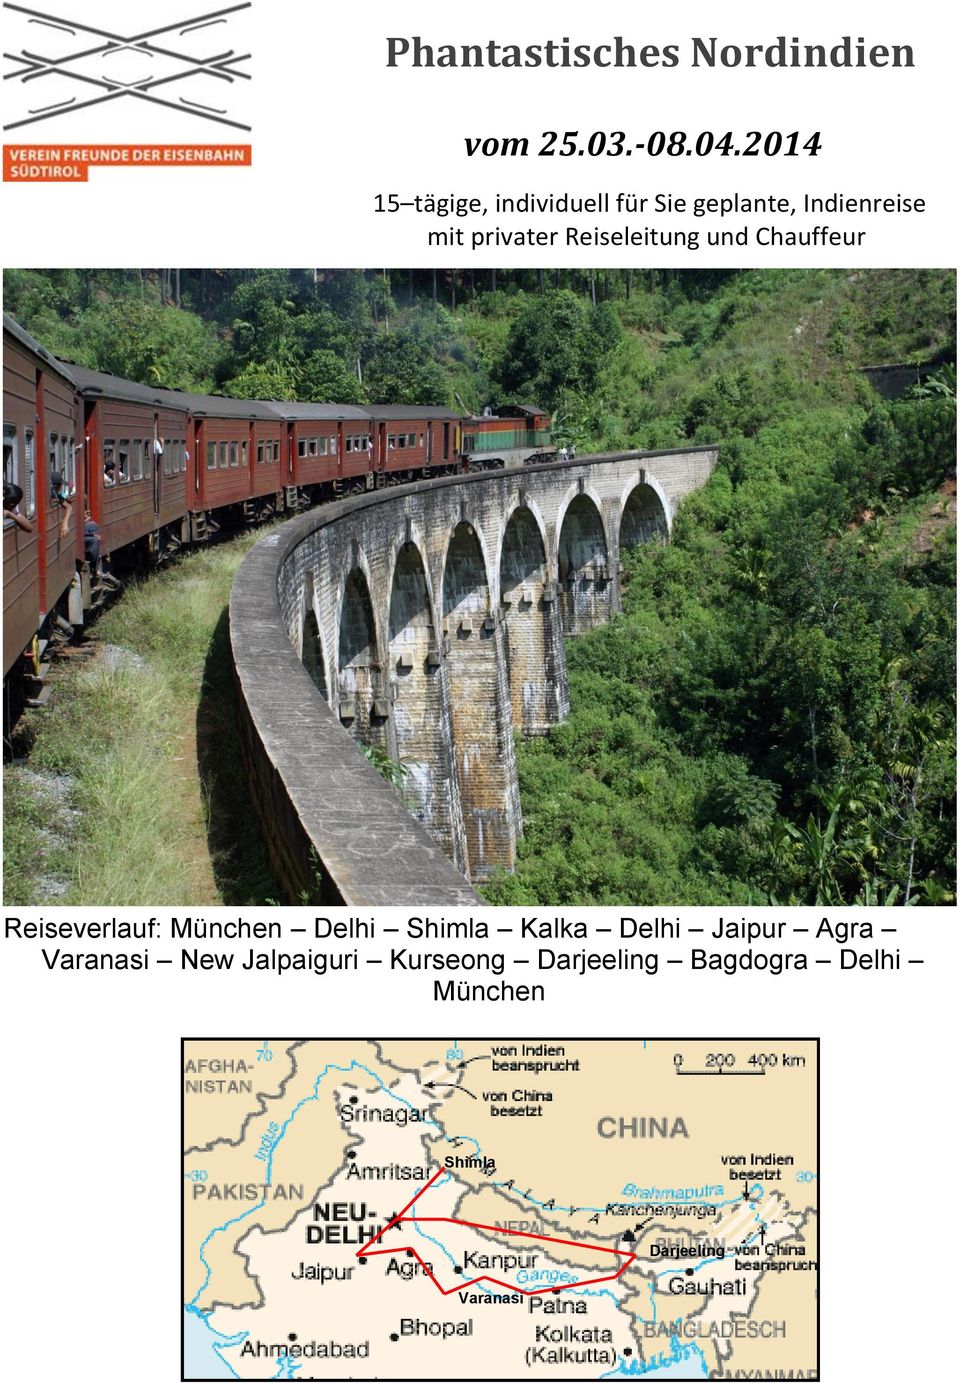 Reiseleitung und Chauffeur Reiseverlauf: München Delhi Shimla Kalka Delhi